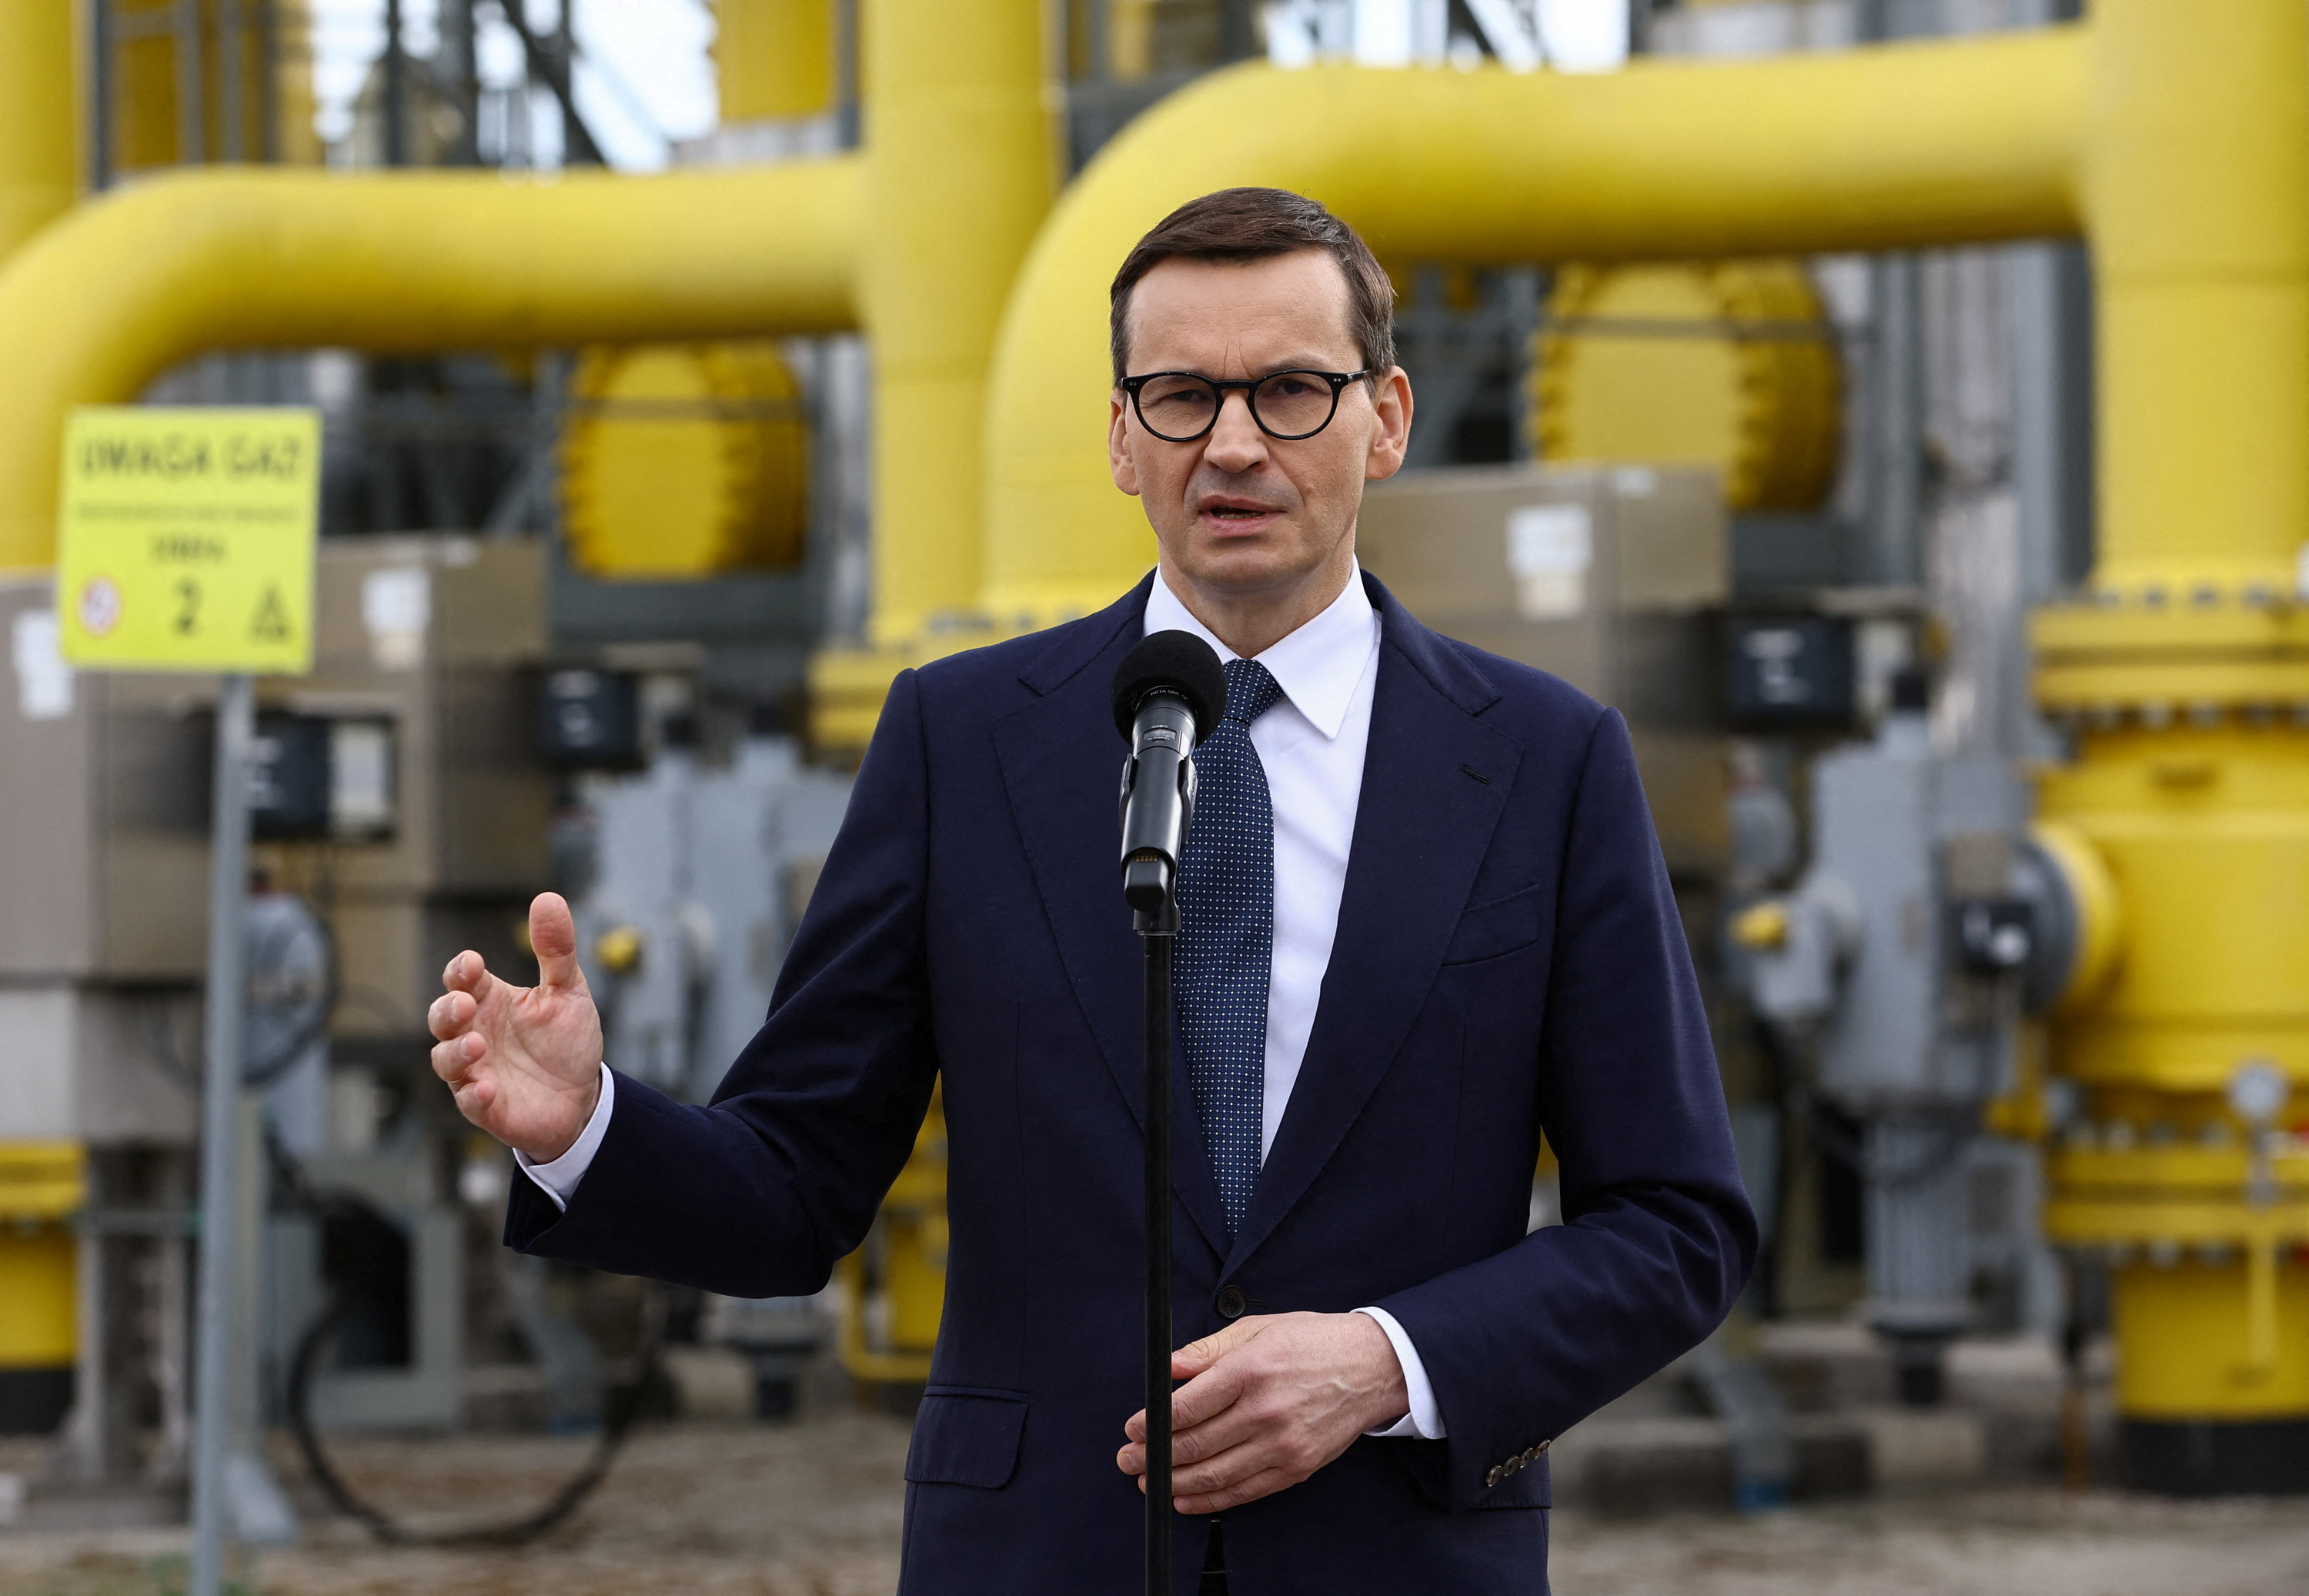 El primer ministro polaco, Mateusz Morawiecki, brindó una rueda de prensa desde las instalaciones de la operadora gasística Gaz System en Rembelszczyzna, cerca de Varsovia (REUTERS/Kacper Pempel)